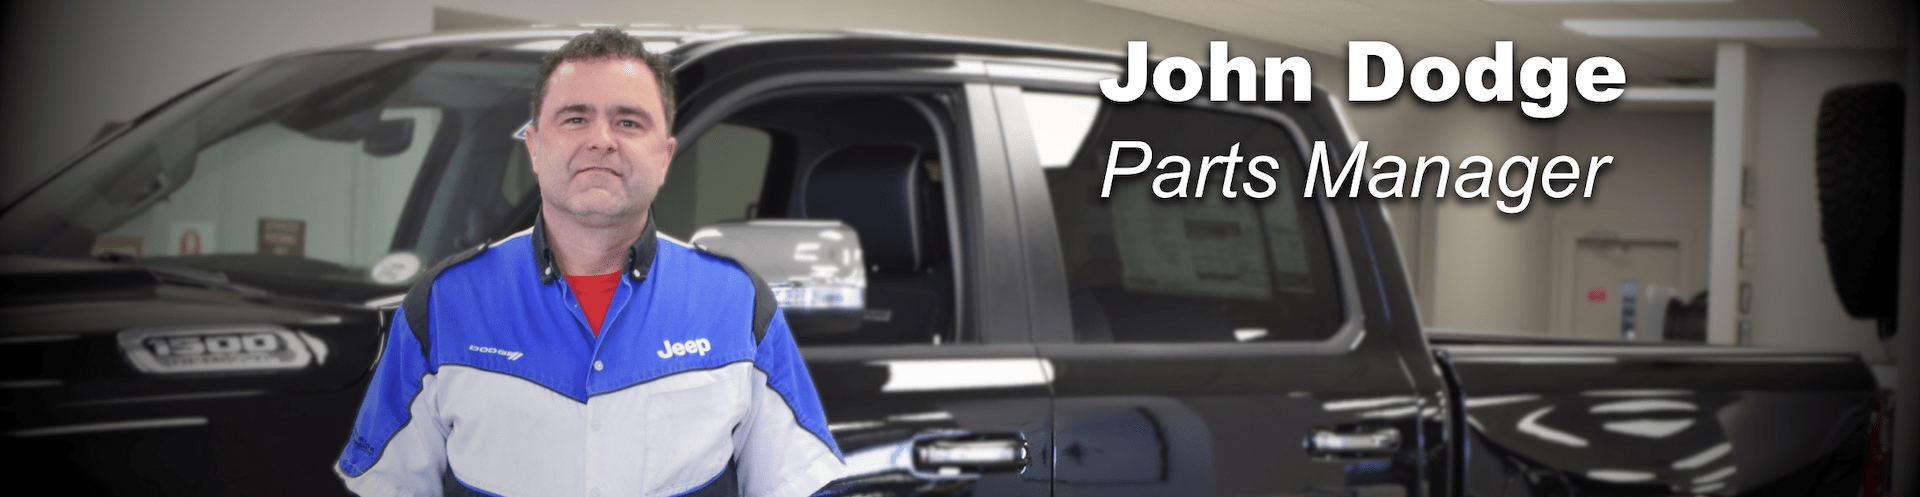 john dodge parts manager prestige chrysler dodge jeep ram